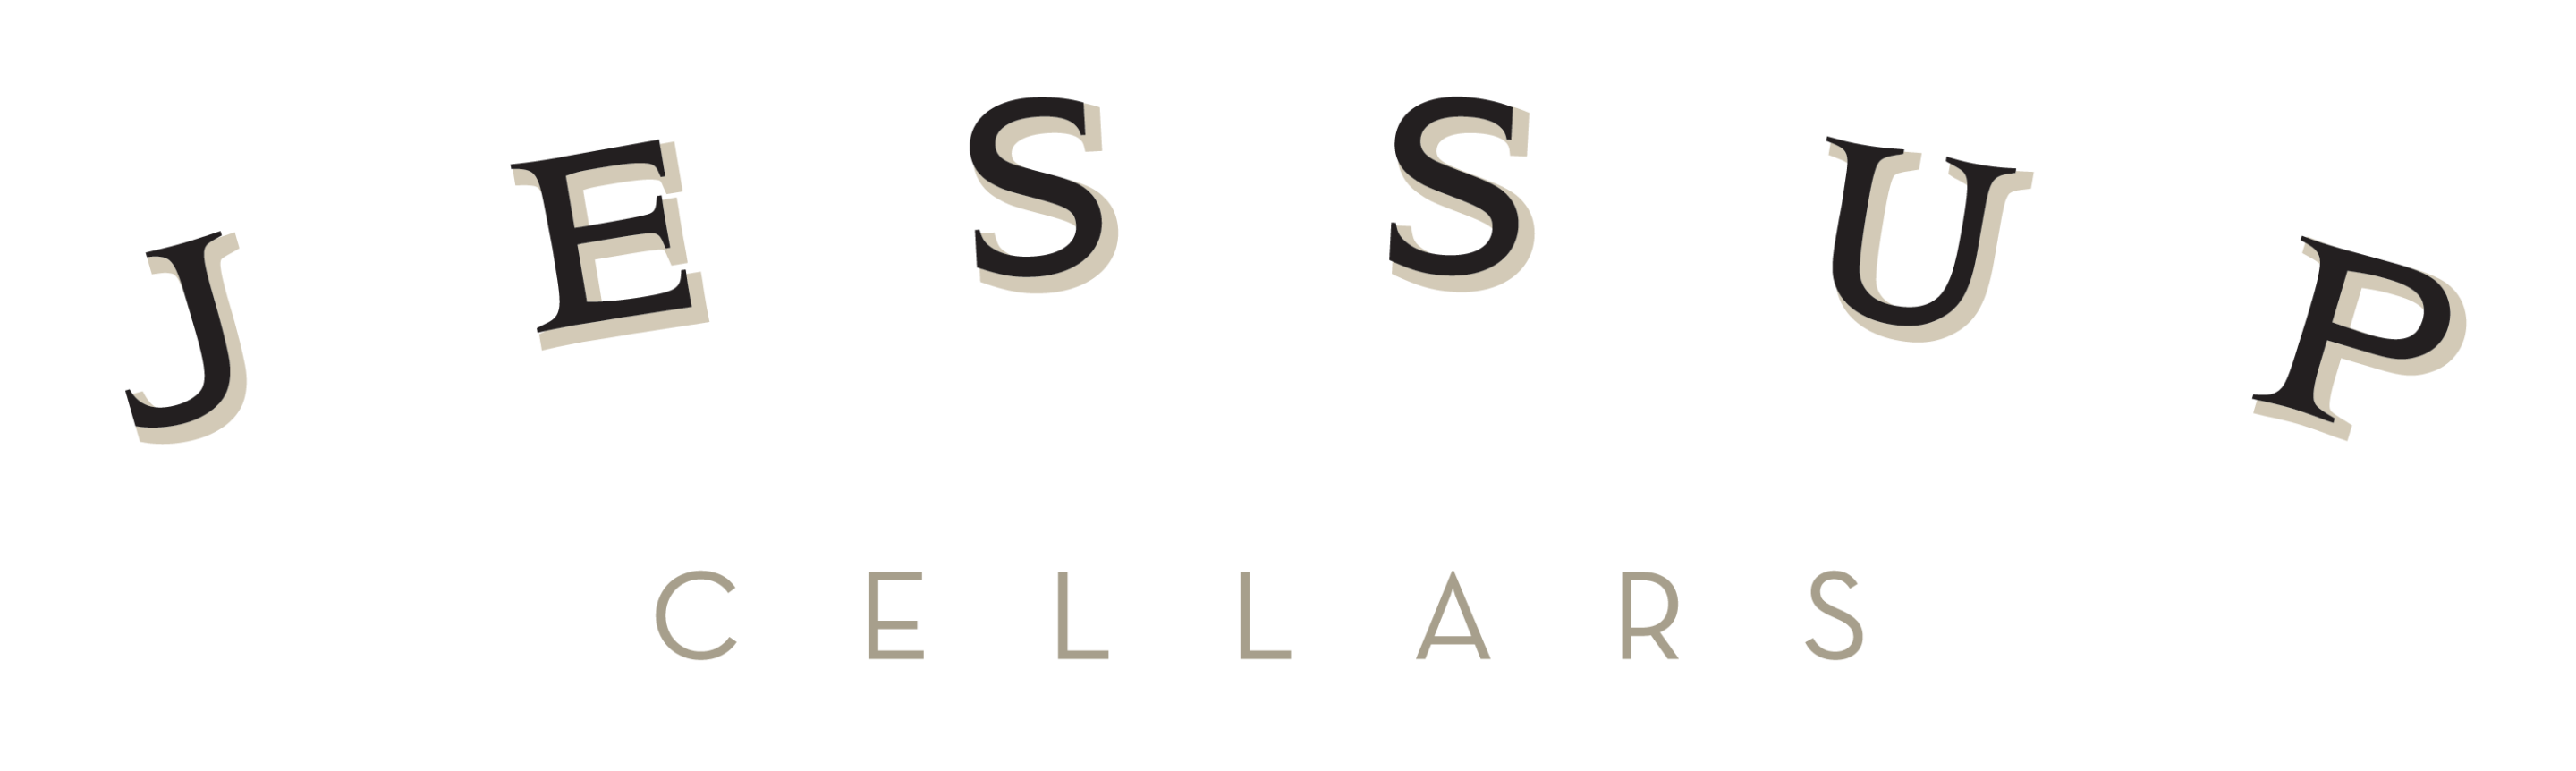 Jessup Cellars logo